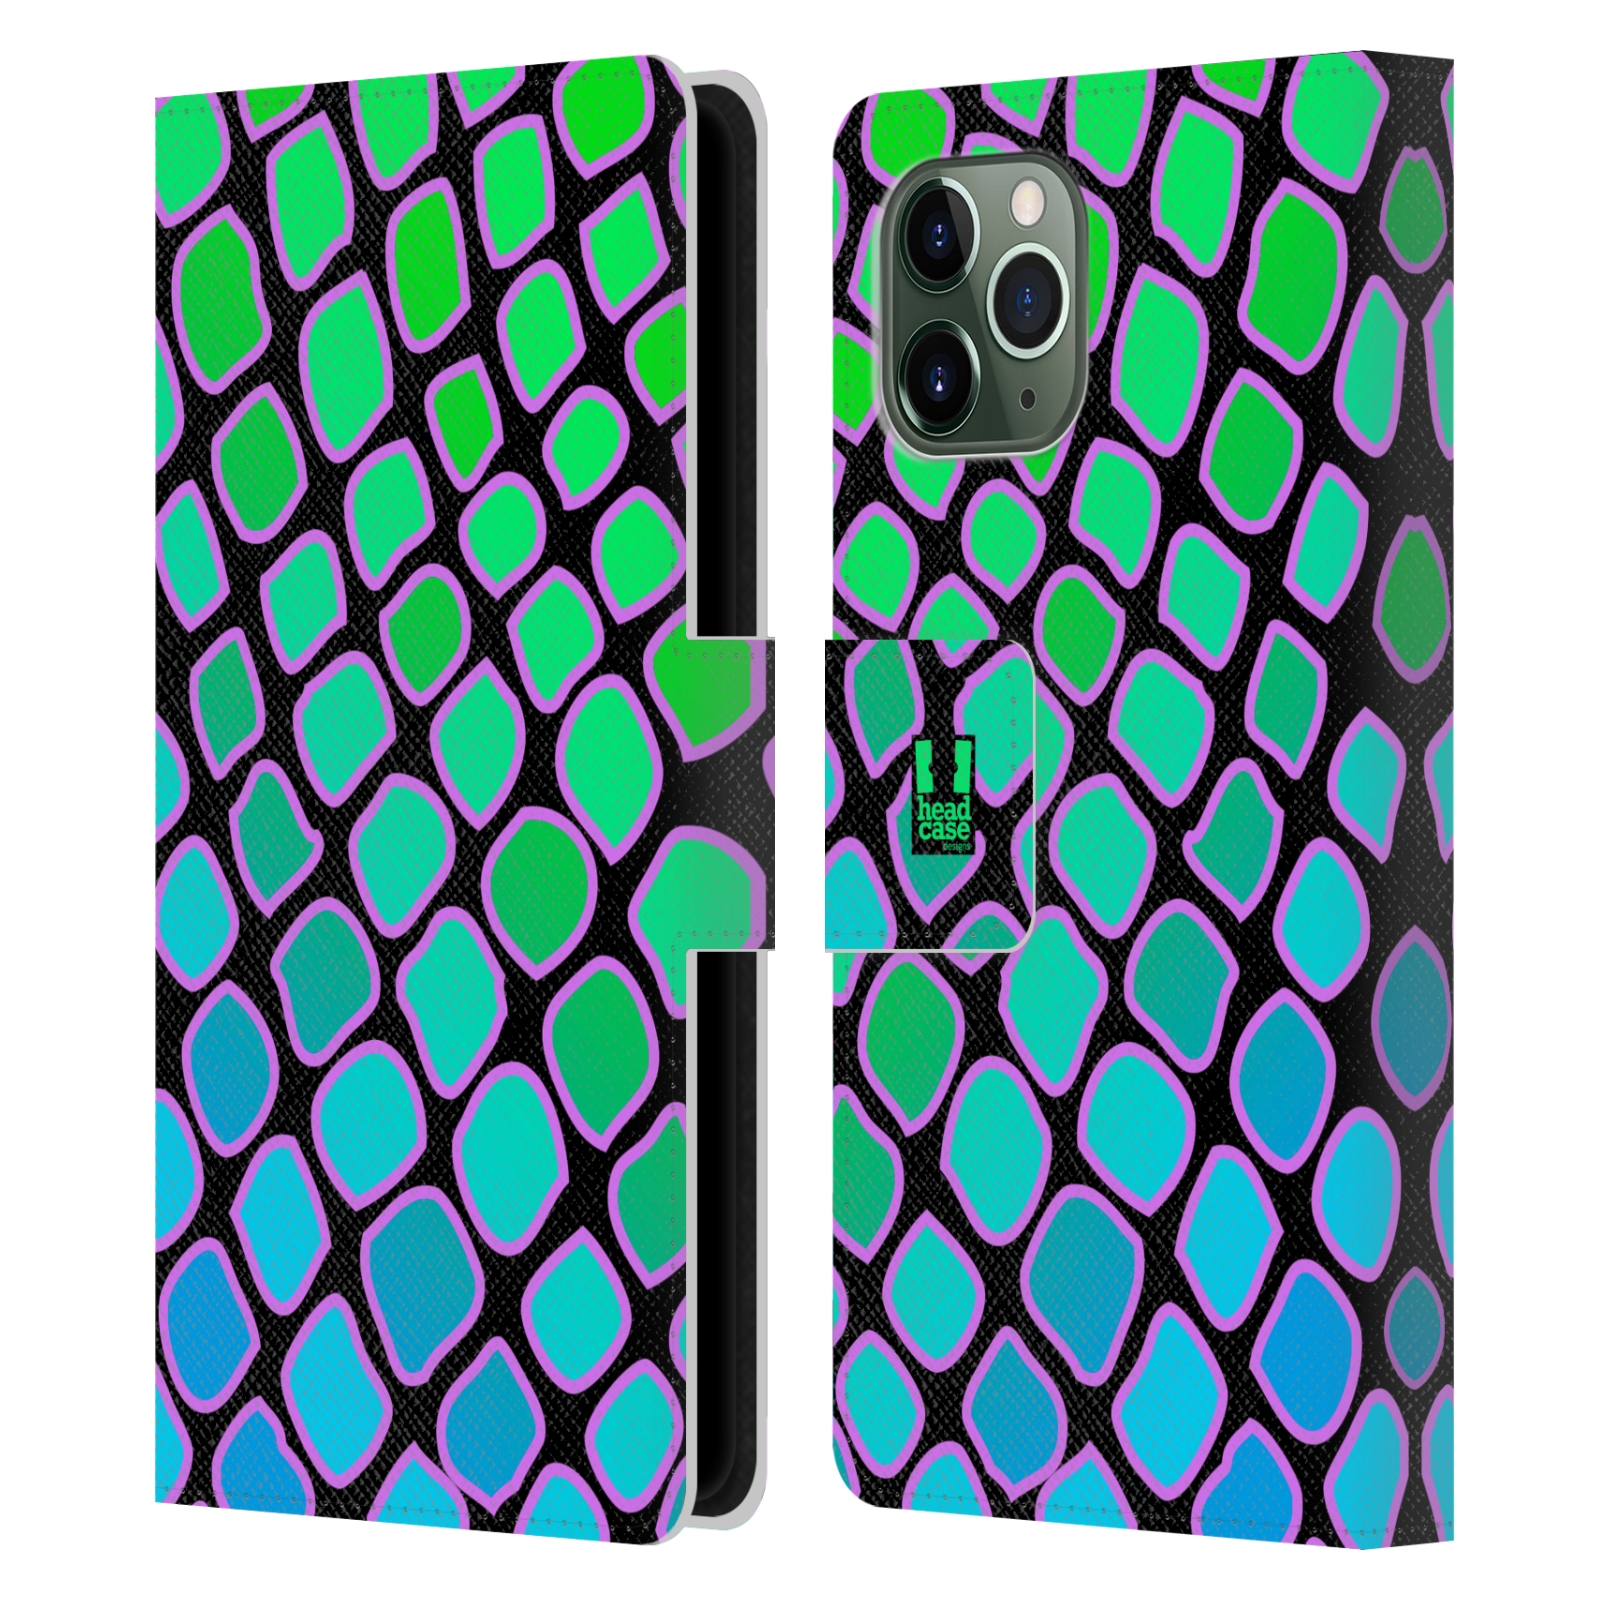 Pouzdro na mobil Apple Iphone 11 PRO Zvířecí barevné vzory vodní had modrá a zelená barva AQUA